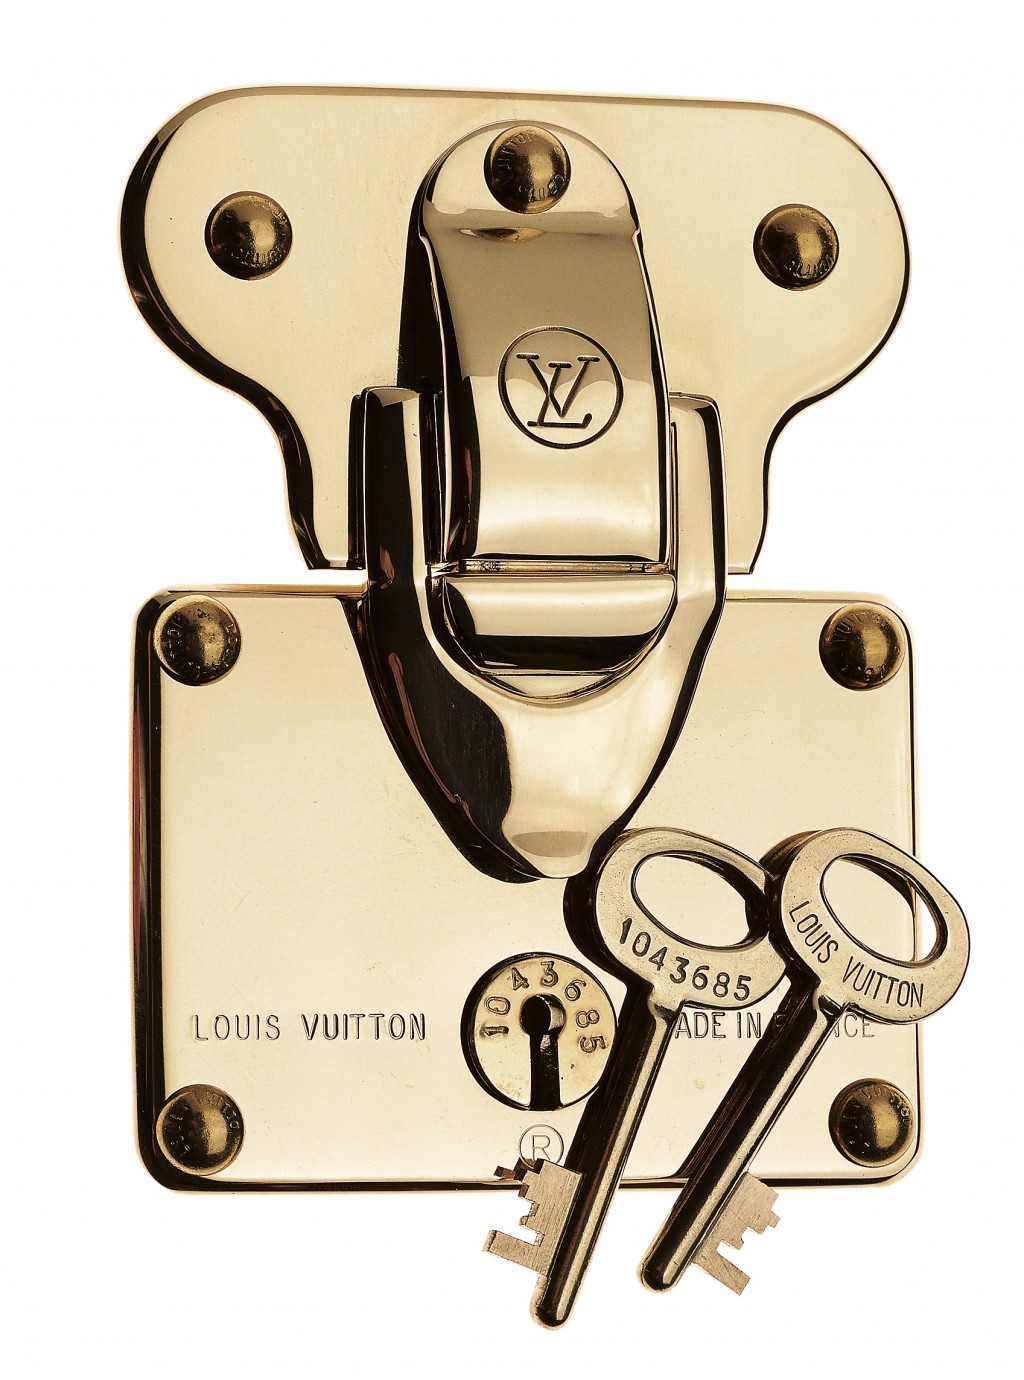 Louis Vuitton ổ khoá